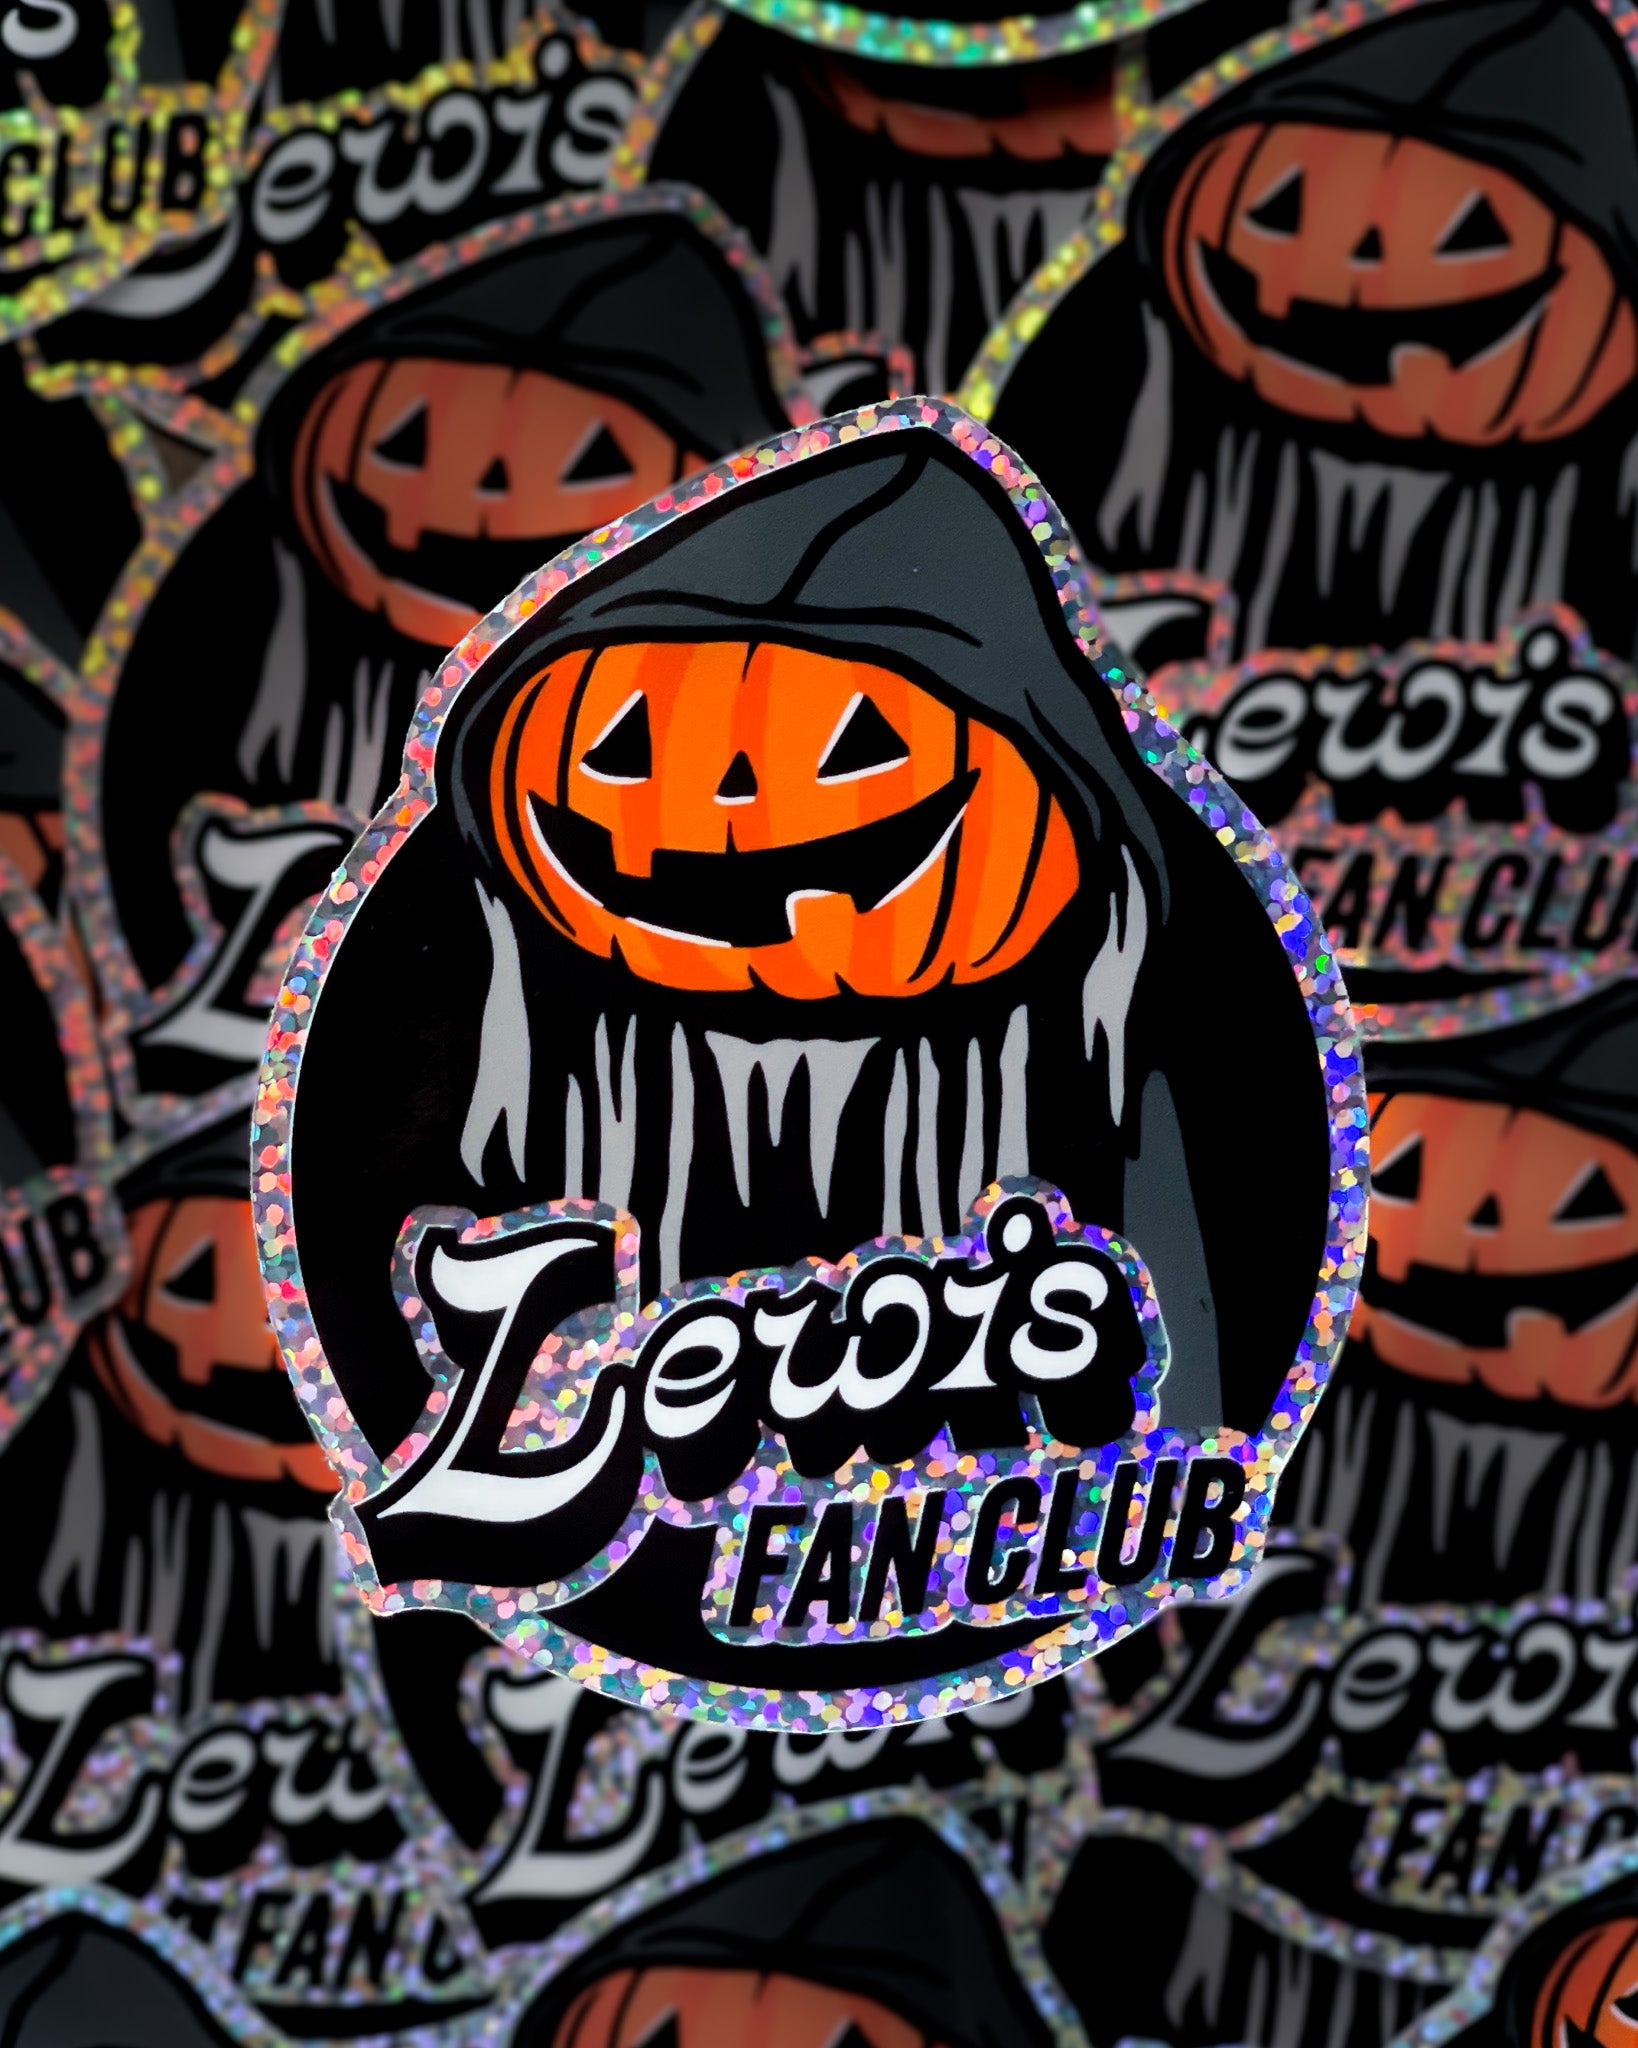 ‘Lewis’ Fan Club Glitter Sticker